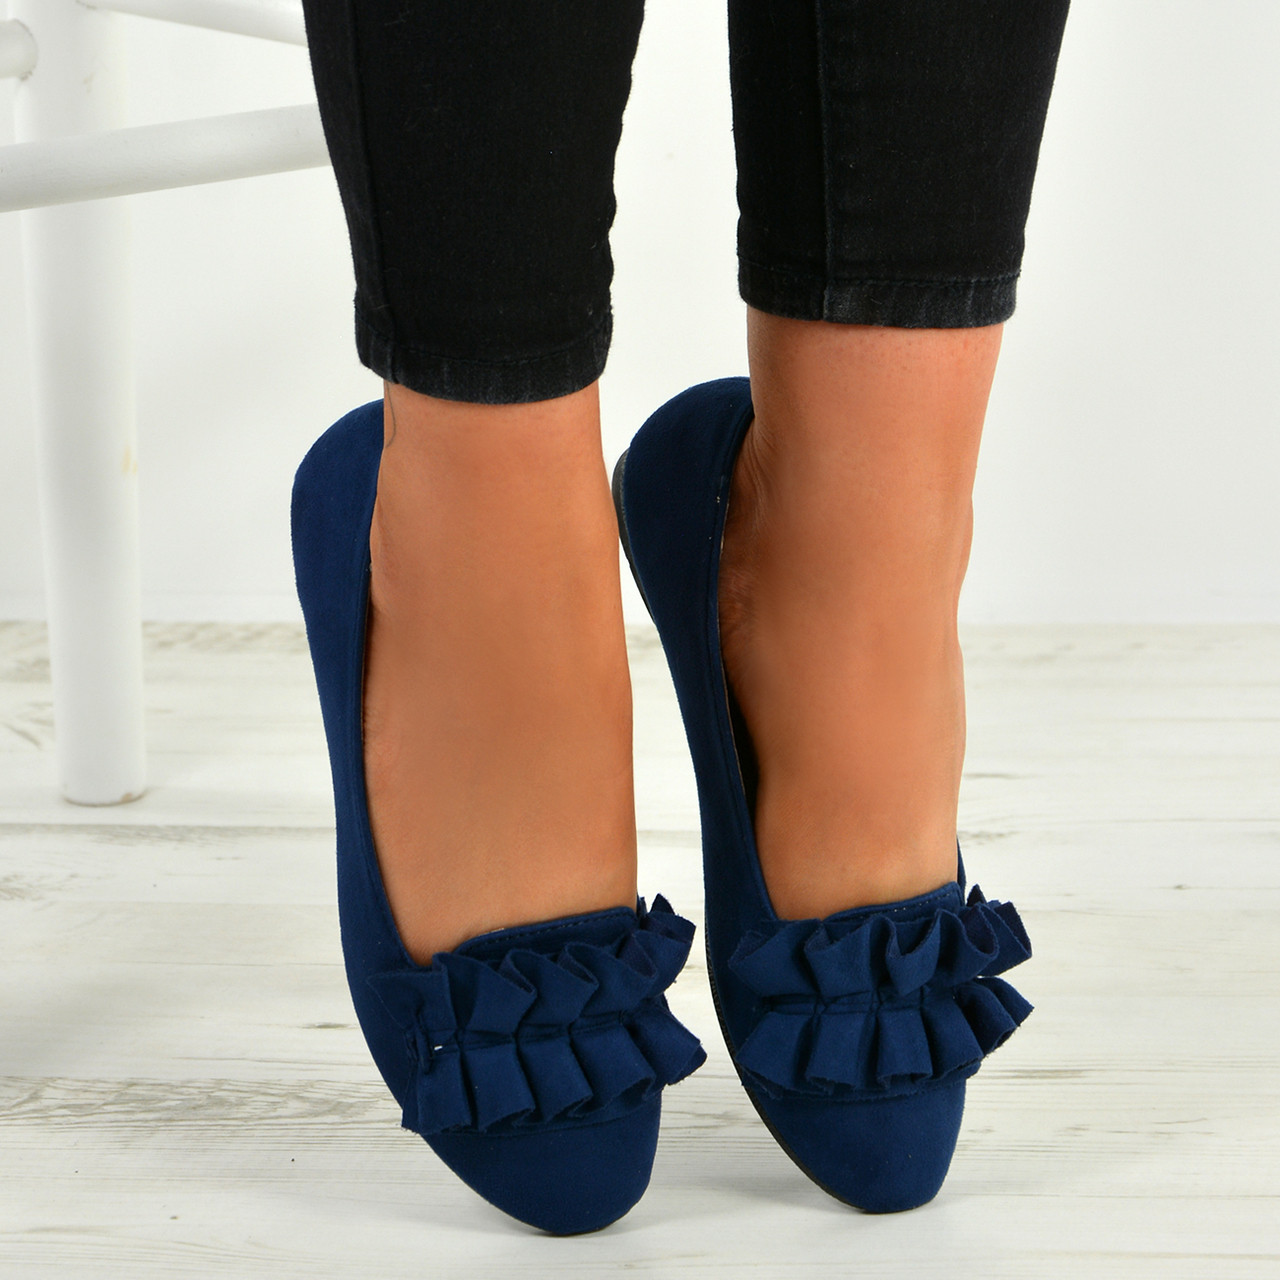 navy blue pumps shoes